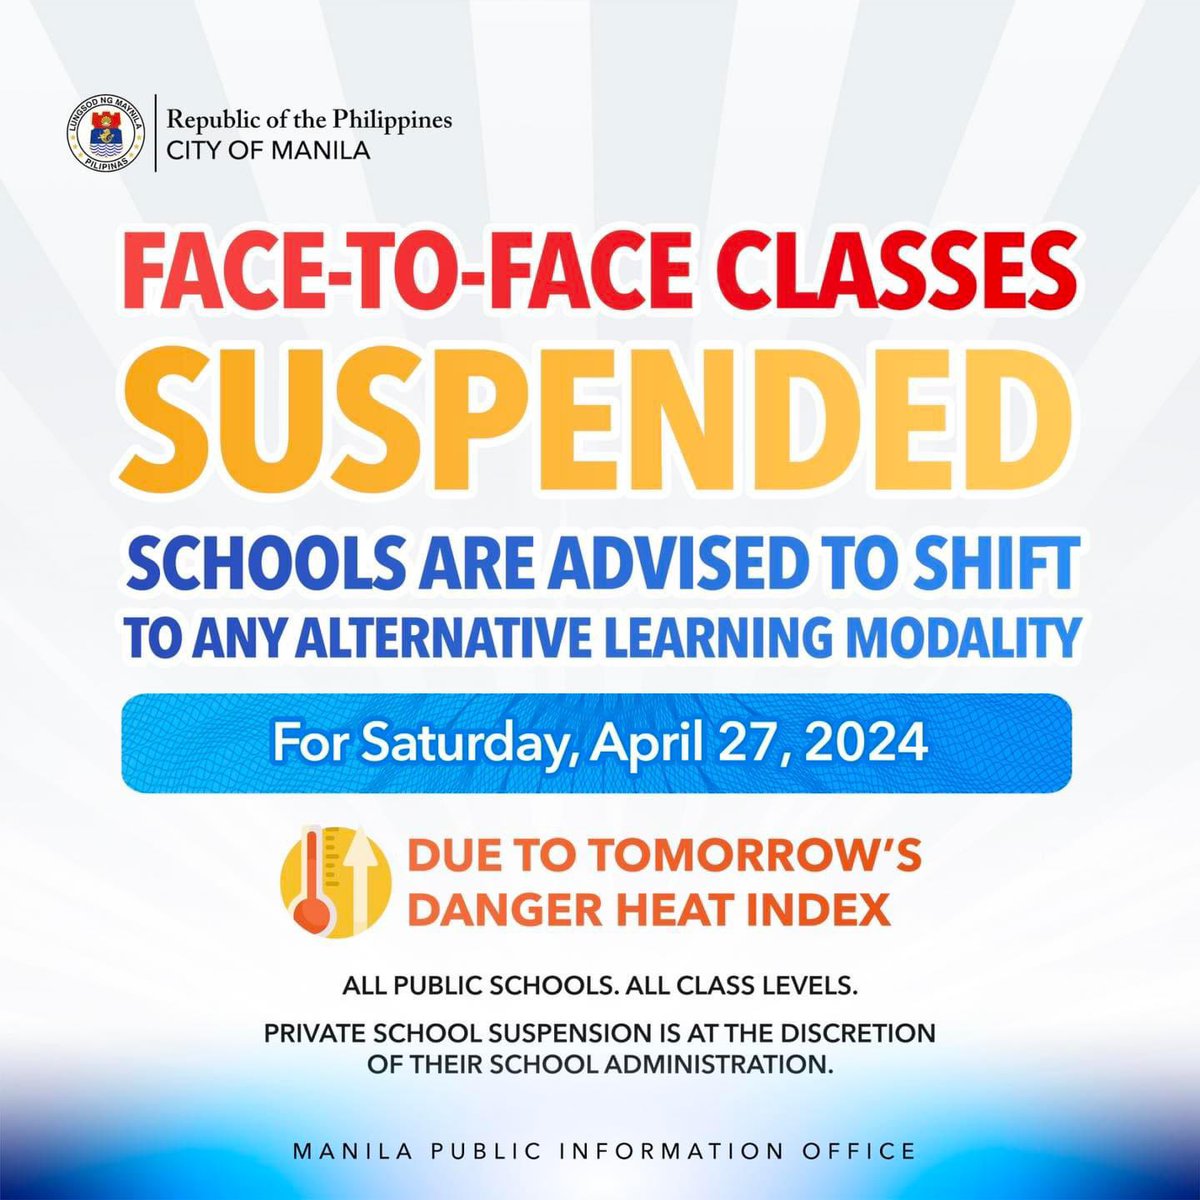 JUST IN: Face-to-face classes sa mga public school sa Maynila, suspendido bukas dahil sa inaasahang mataas na heat index @dzbb (📸 @ManilaPIO )